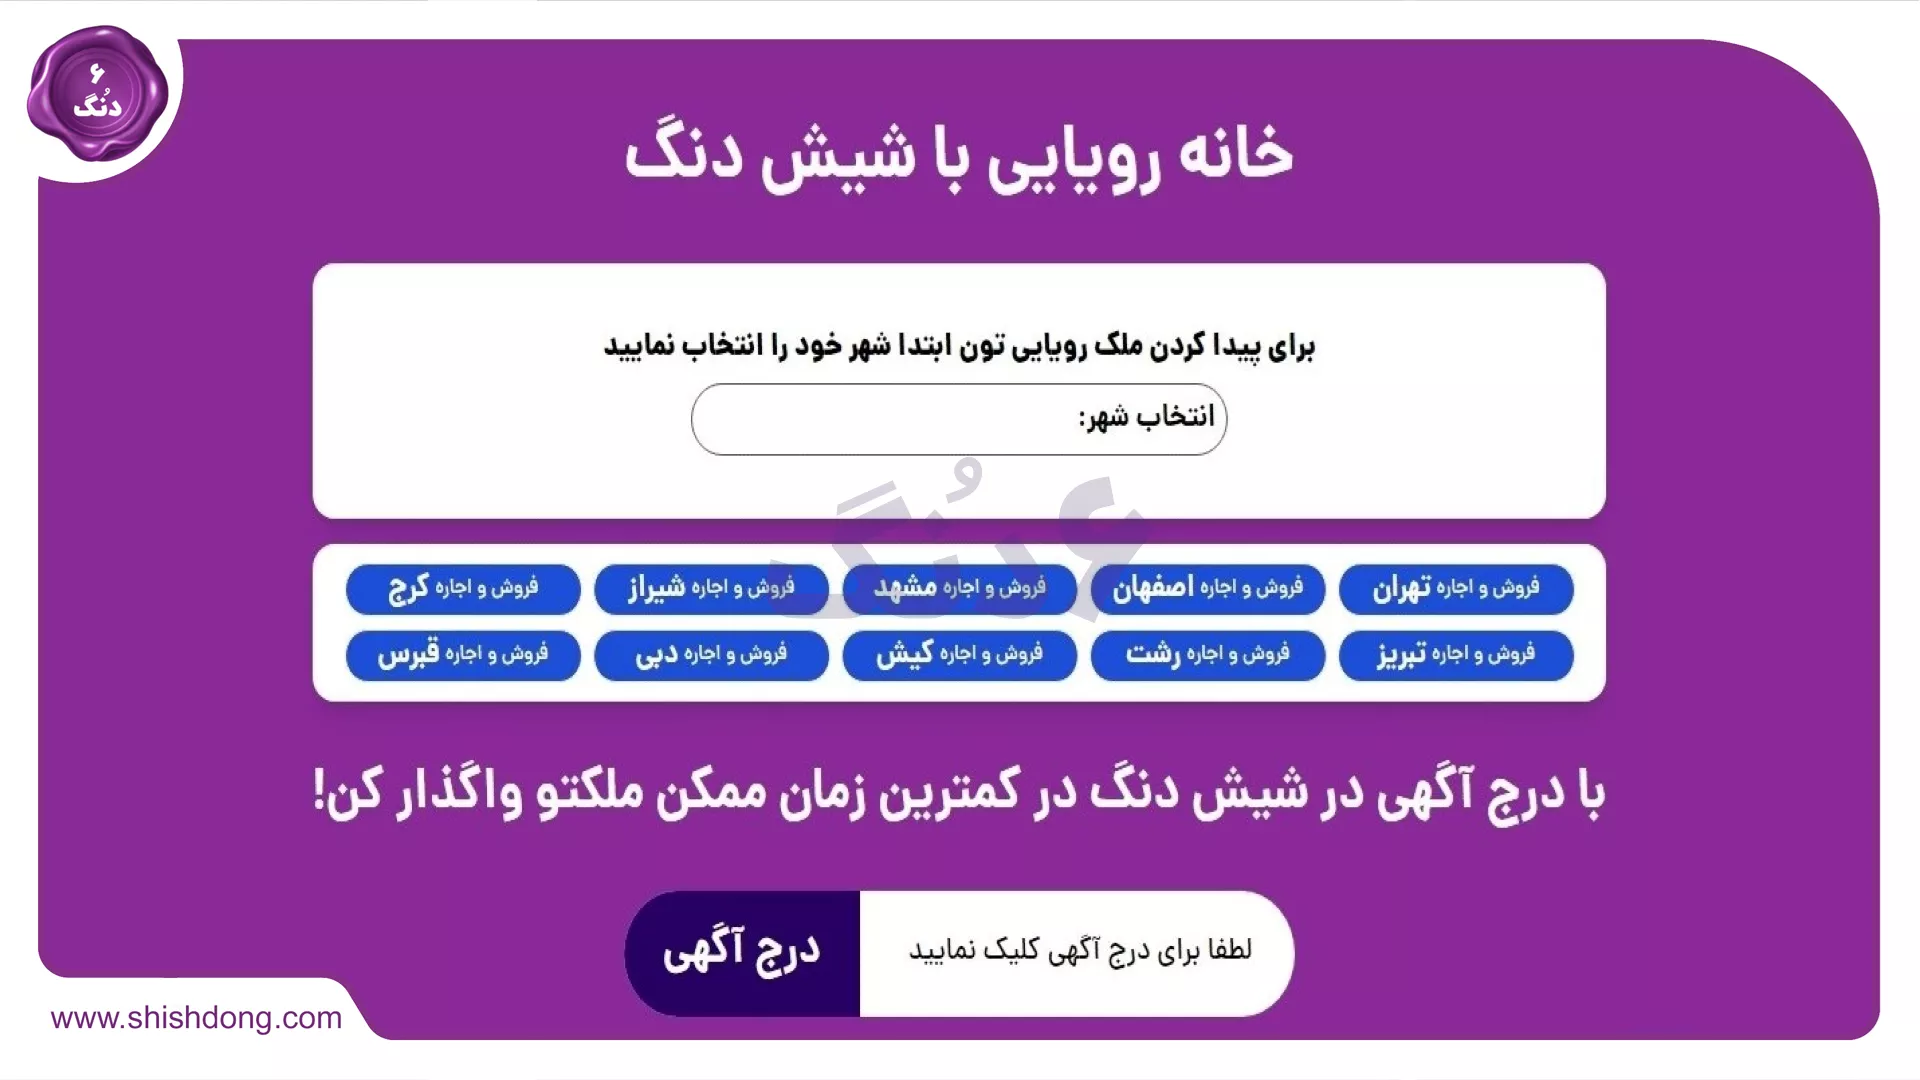 سایت شیش دنگ در اصفهان